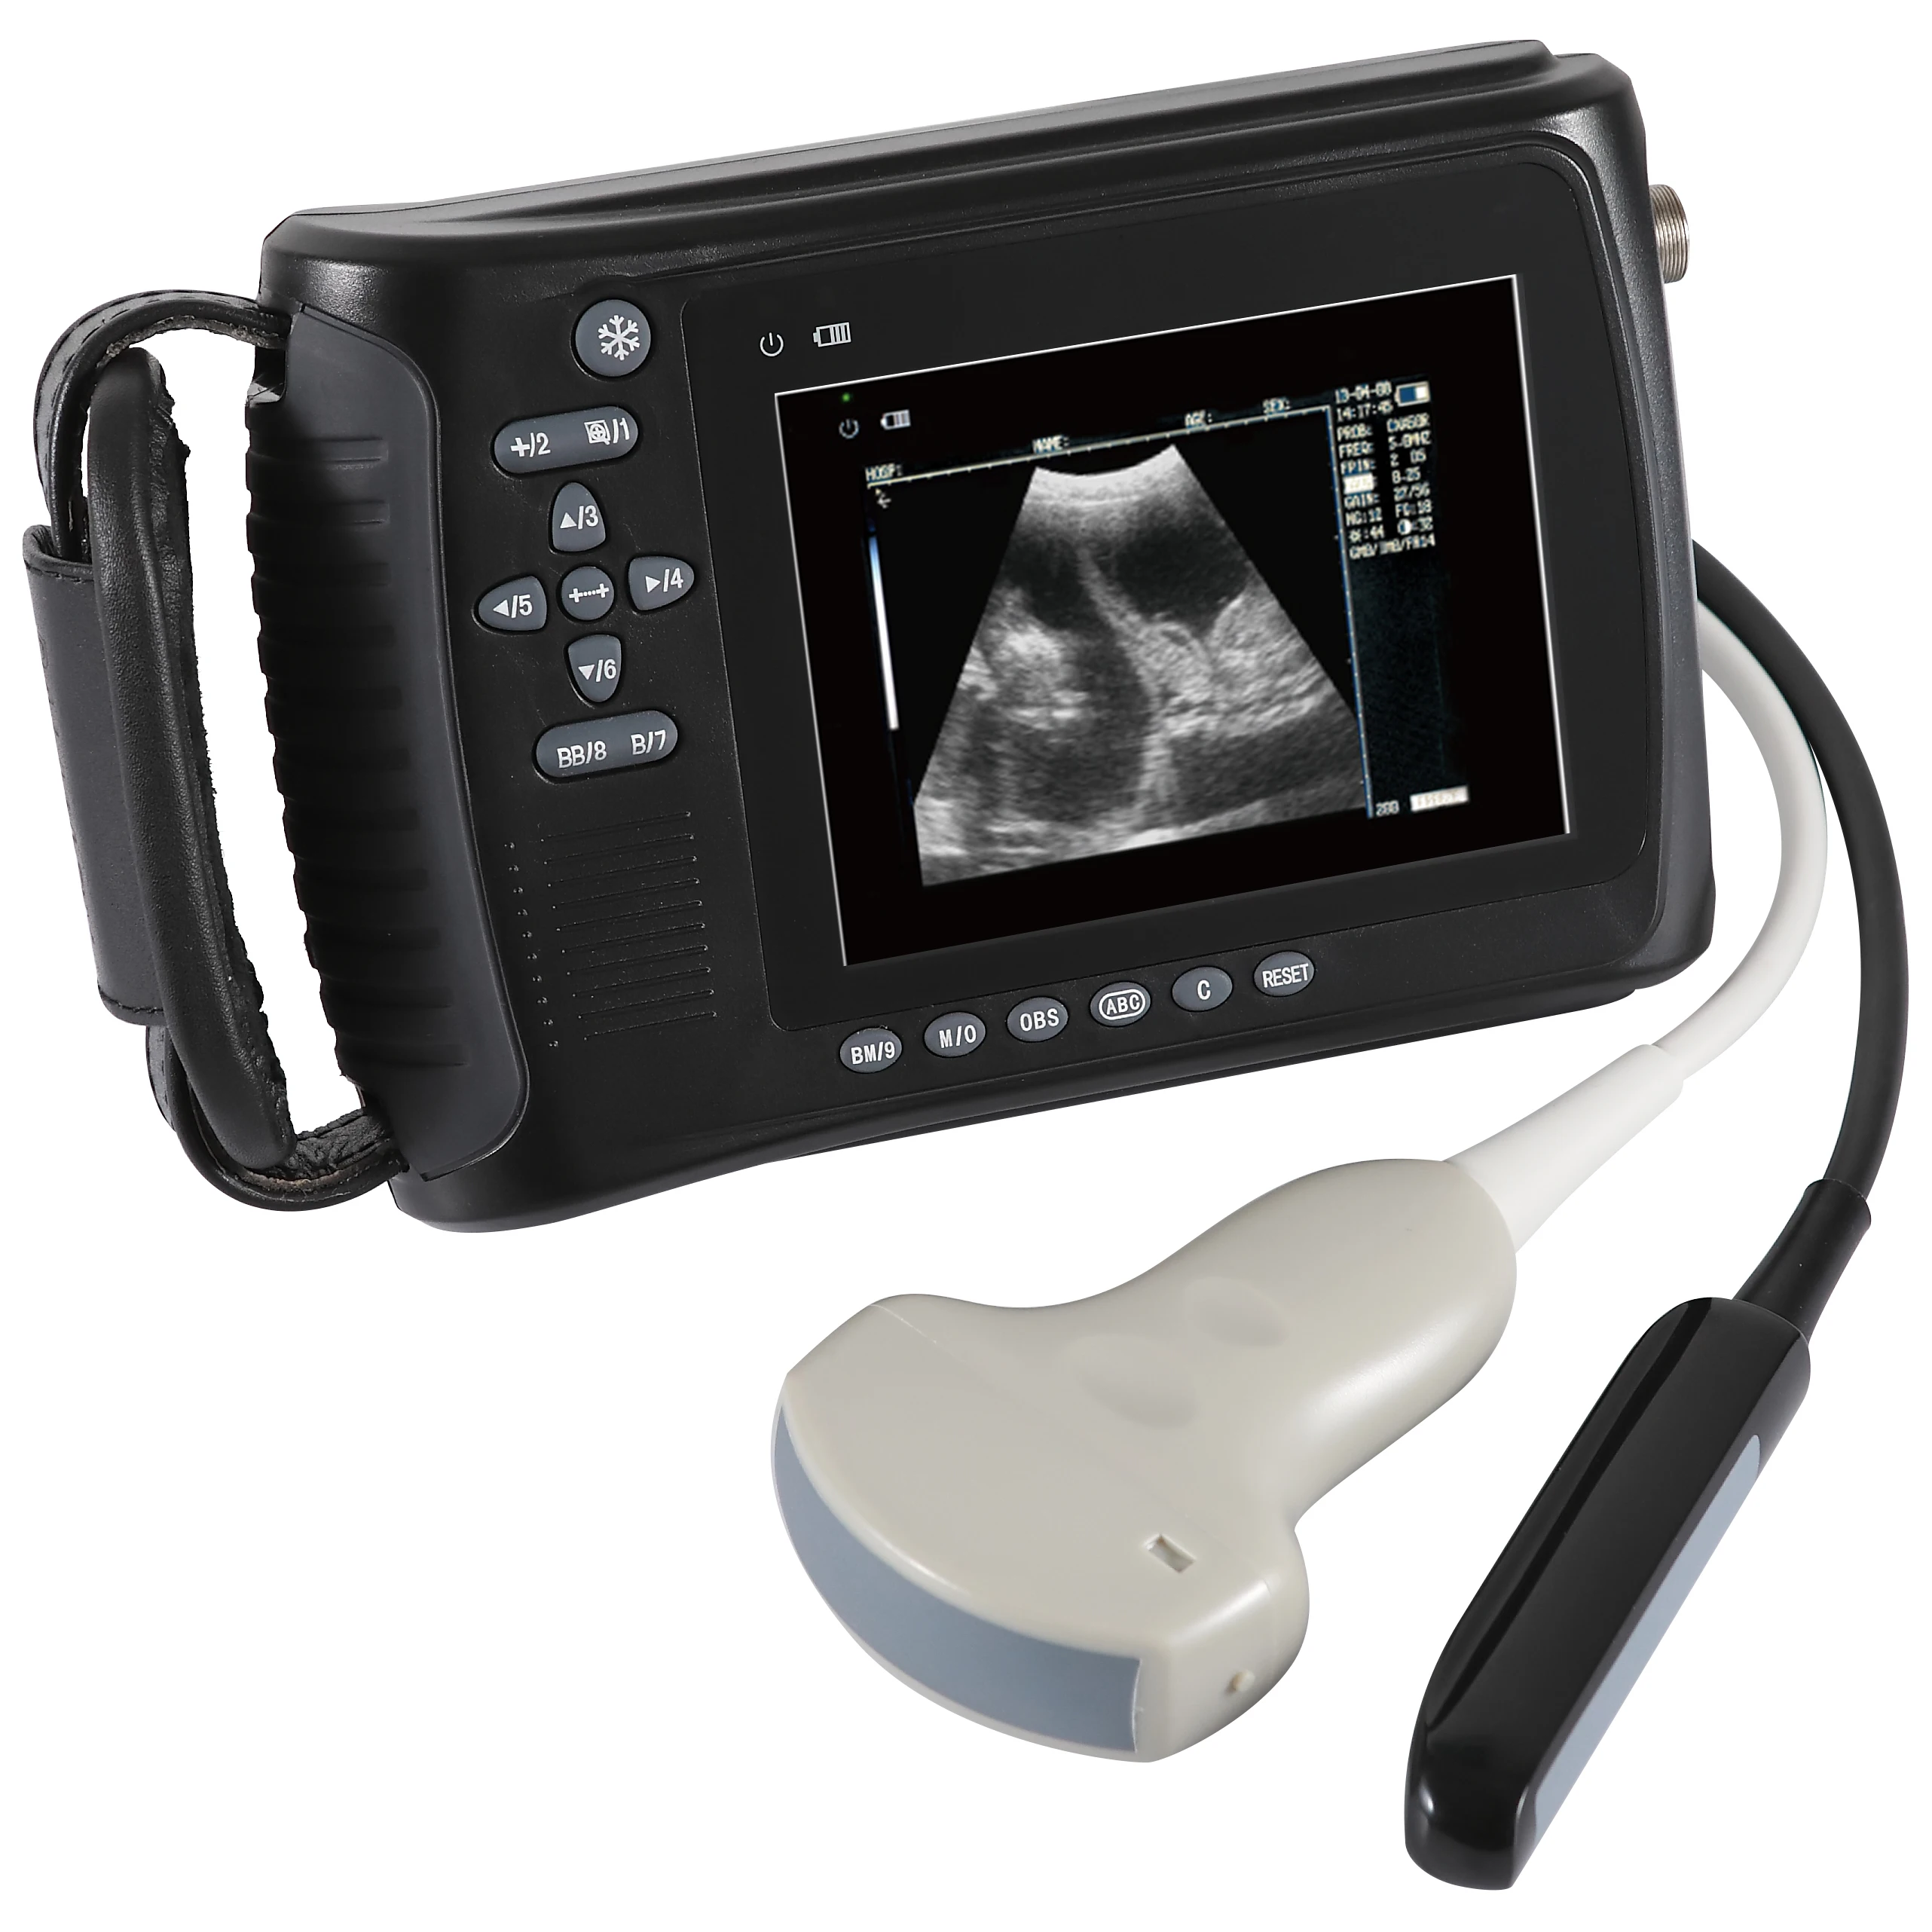 
Portable Bovine Equine Veterinary Handheld Ultrasound Scanner 